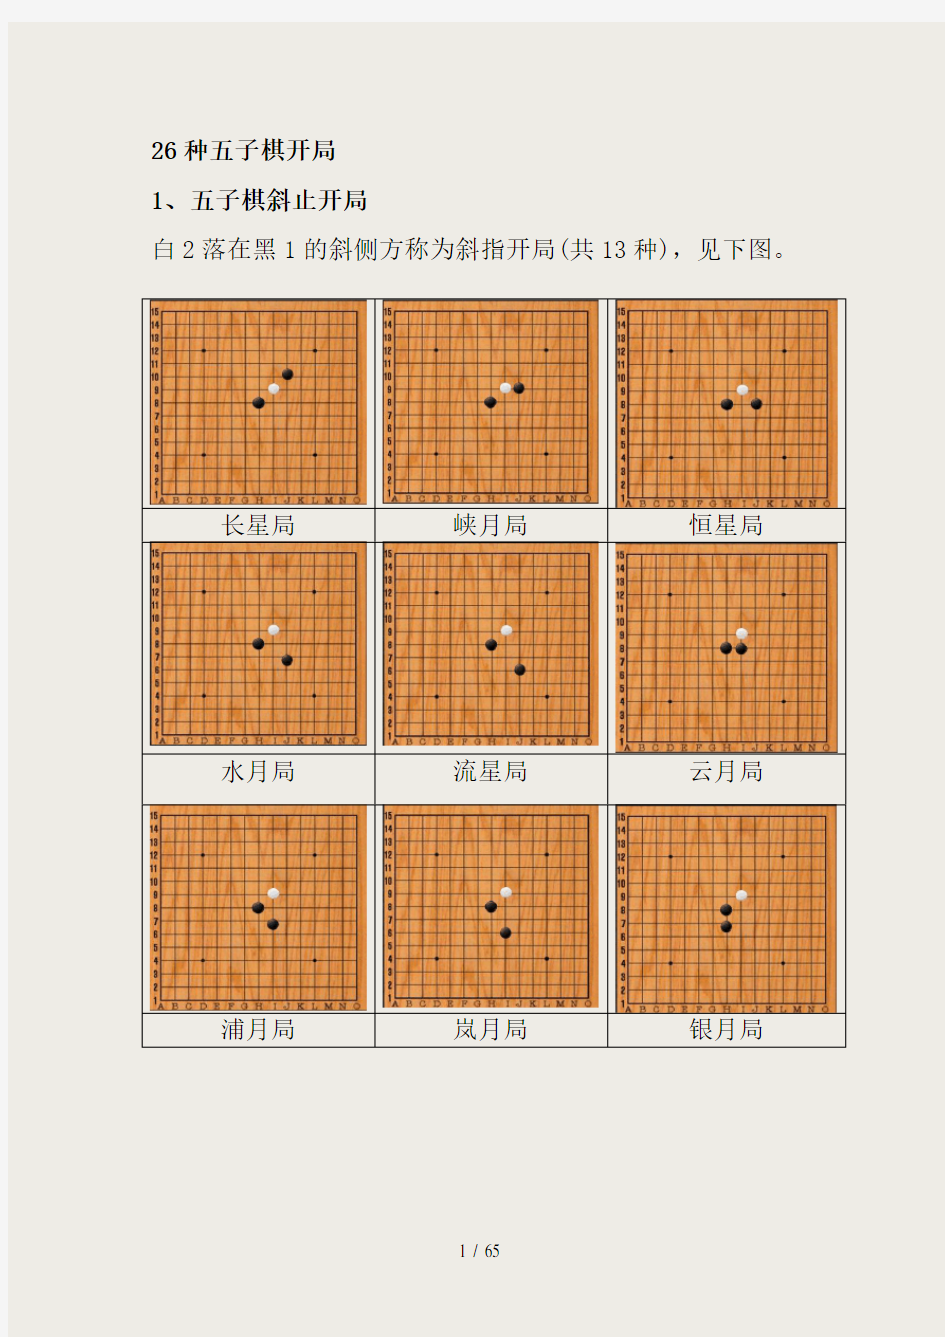 26种五子棋开局图谱,常见的五步开局棋谱(图)